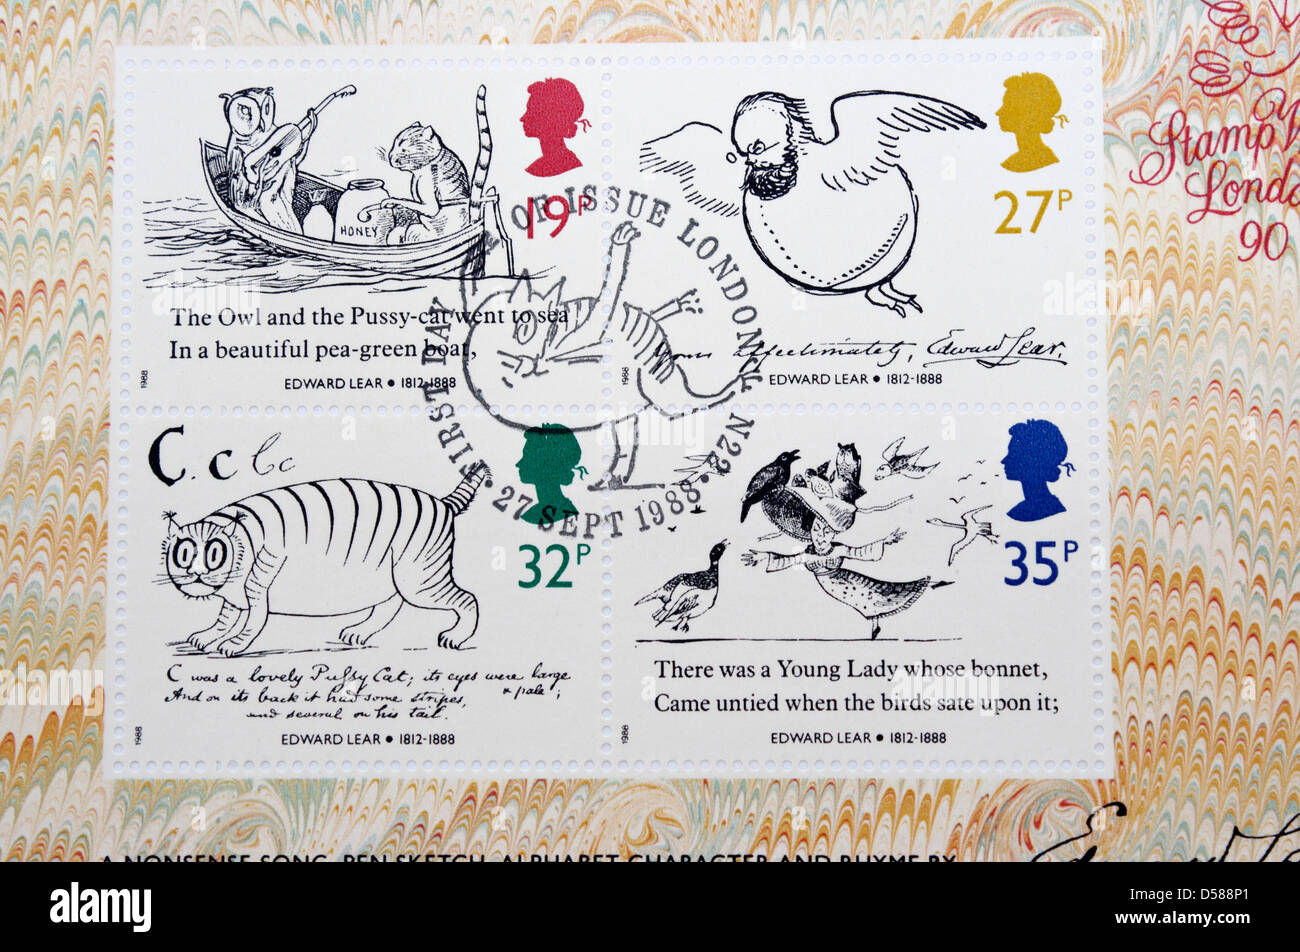 Lot britannique de timbres-poste pour commémorer l'année de la mort d'Edward Lear.Reine Elizabeth II Banque D'Images